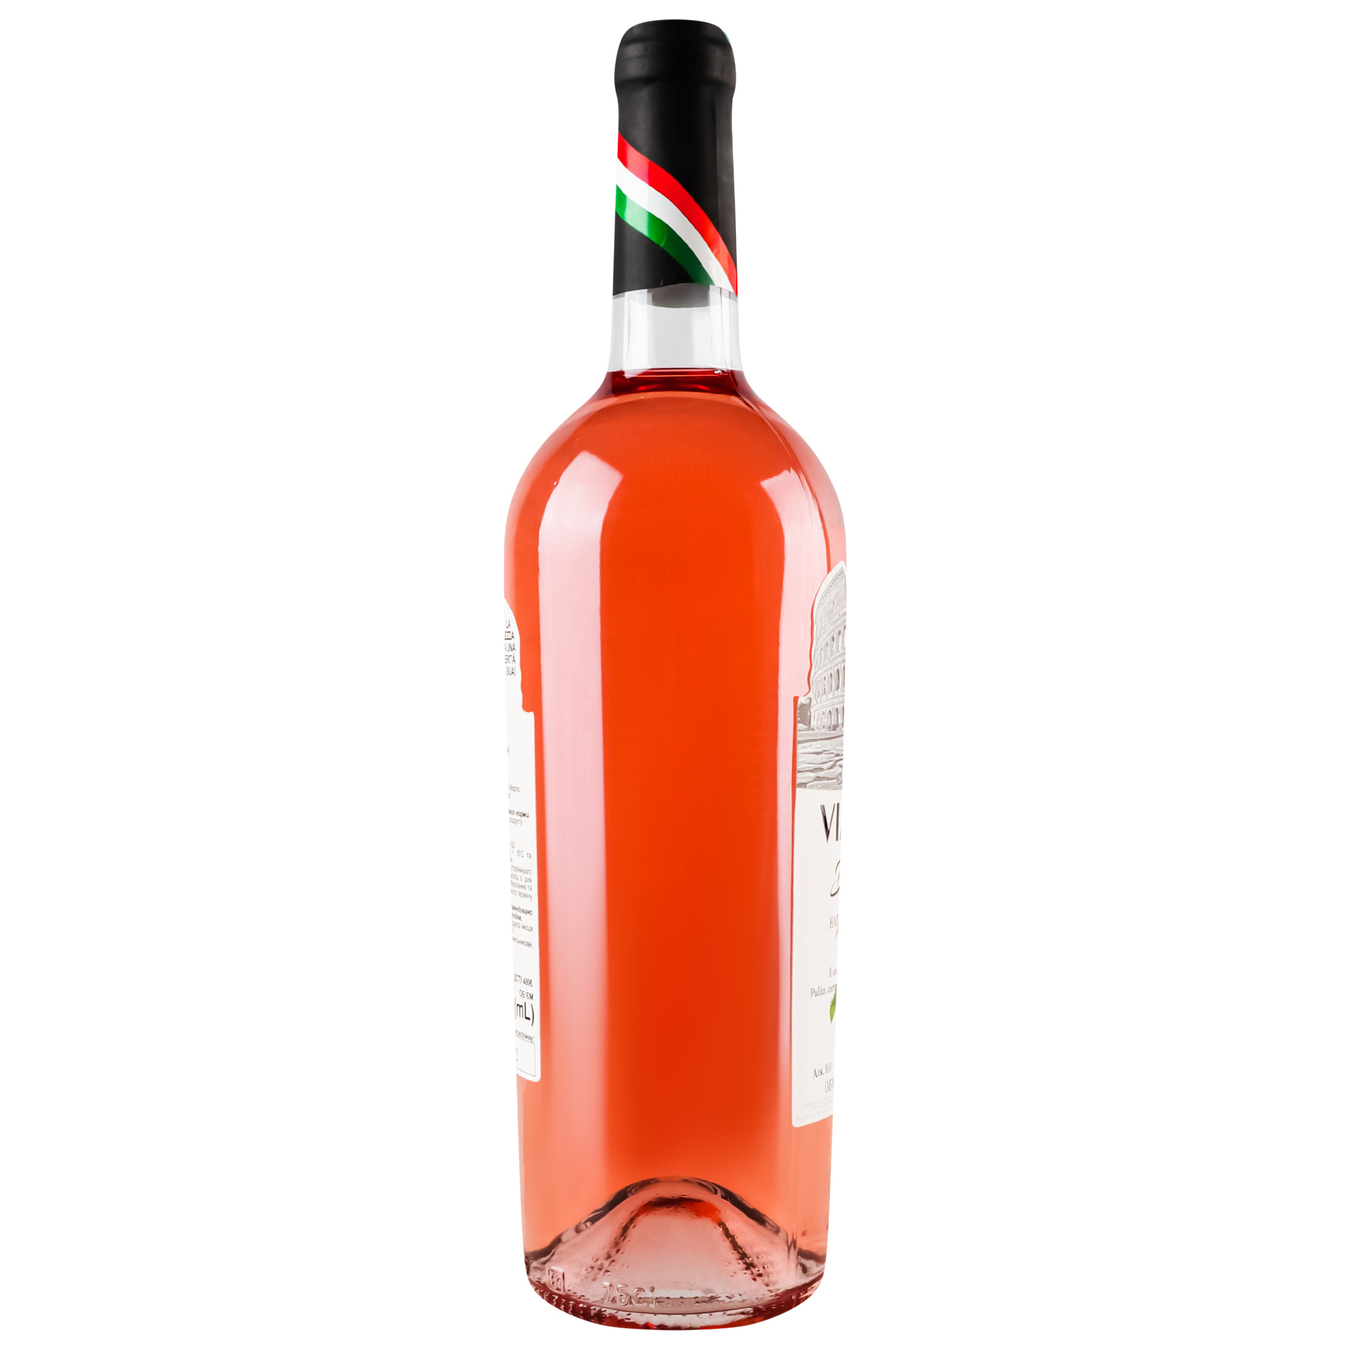 Viaggioi Dolchezza pink semi-sweet wine 9.5-14% 0.75 l 3